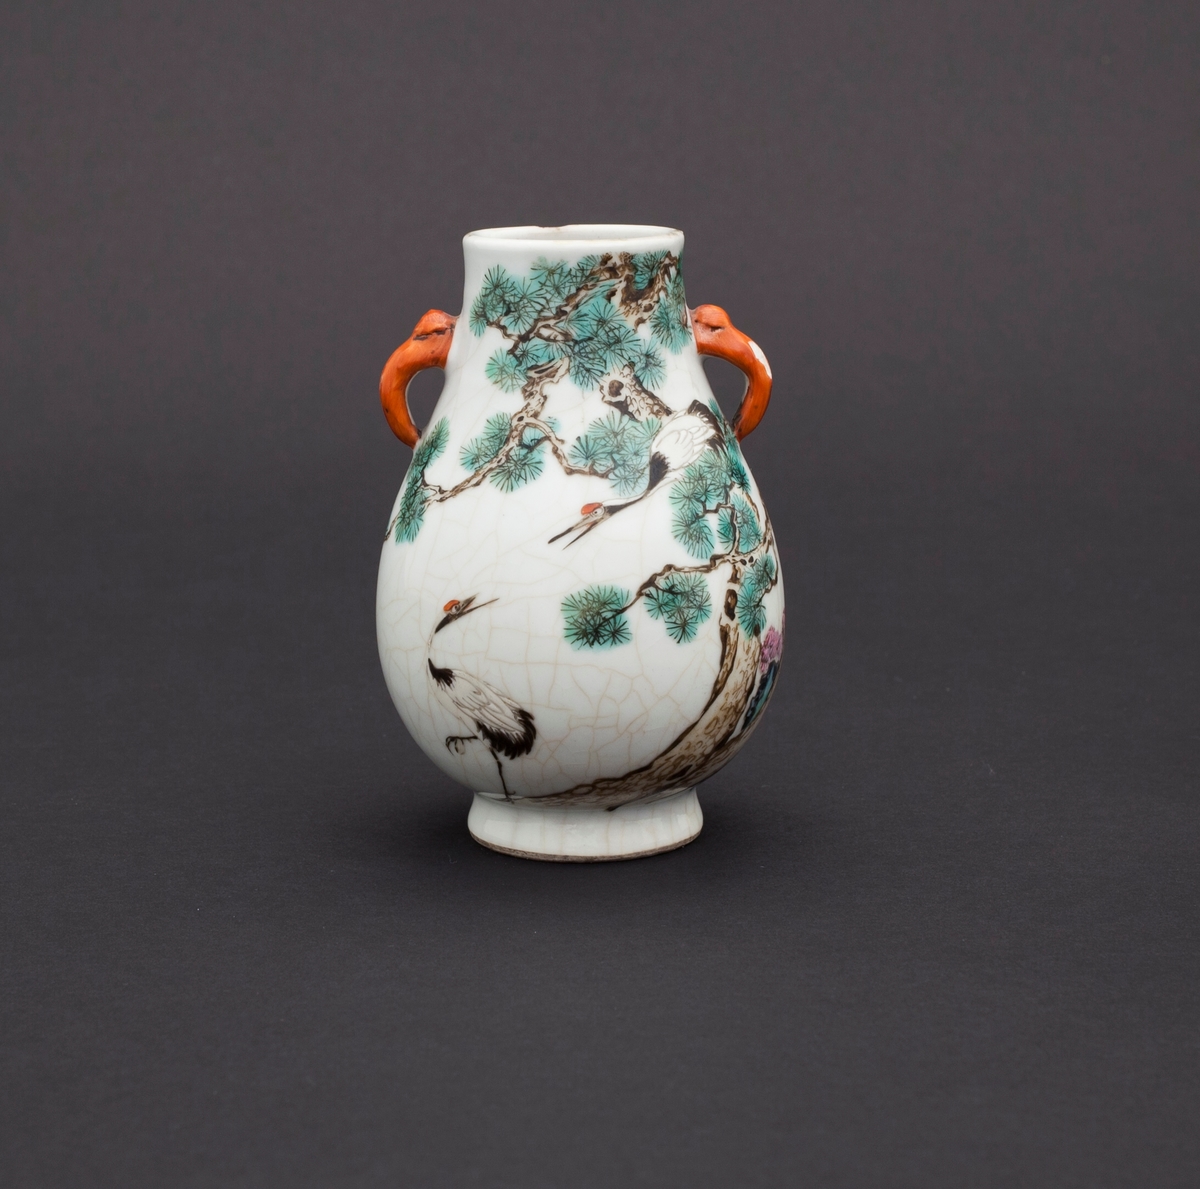 Famille rose vase med kirsebærblomst, furutrær, stein og traner. Tranen fremstilles ofte i kombinasjon med furu og stein, og er som oftest brukt som et symbol for langt liv. Håndtakene er utformet som elefanthoder.